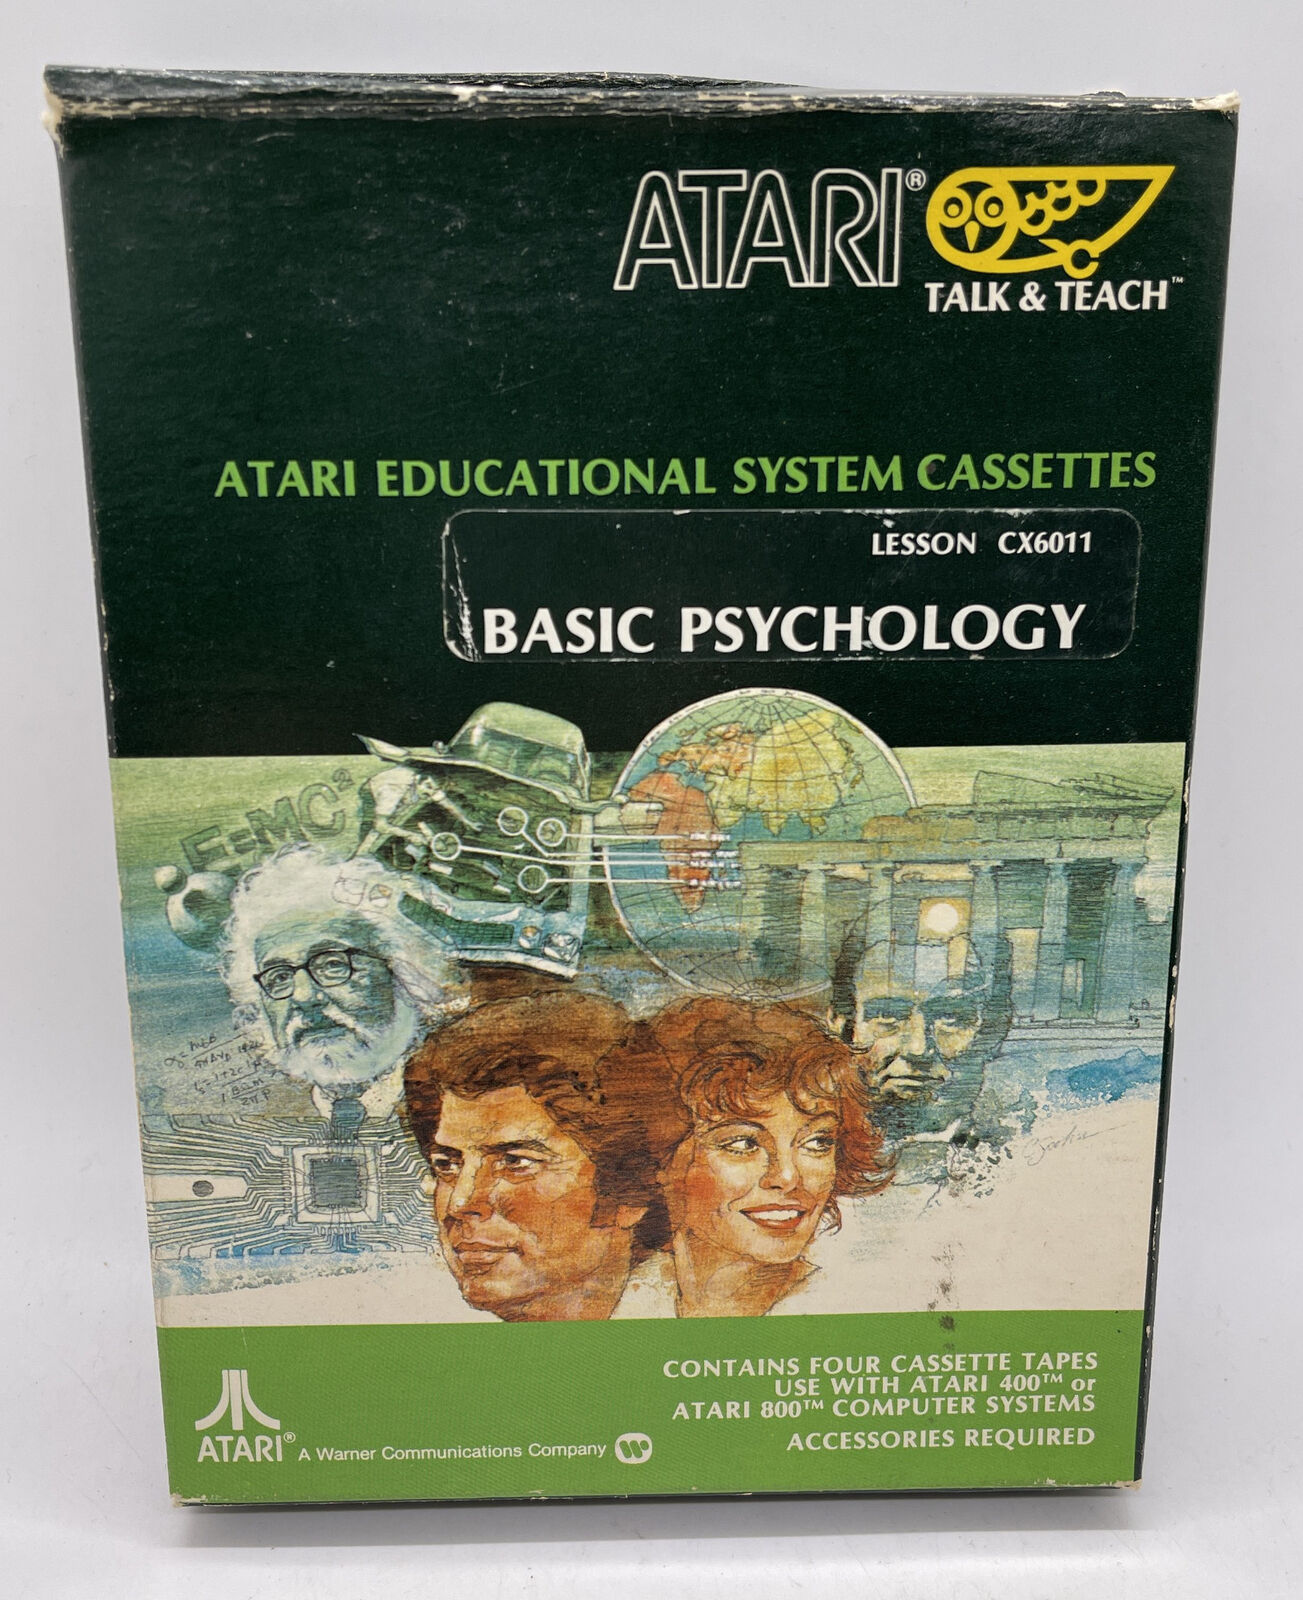 Atari Talk & Teach 400 / 800 Educational Cassettes - Basic Psychology CX6011